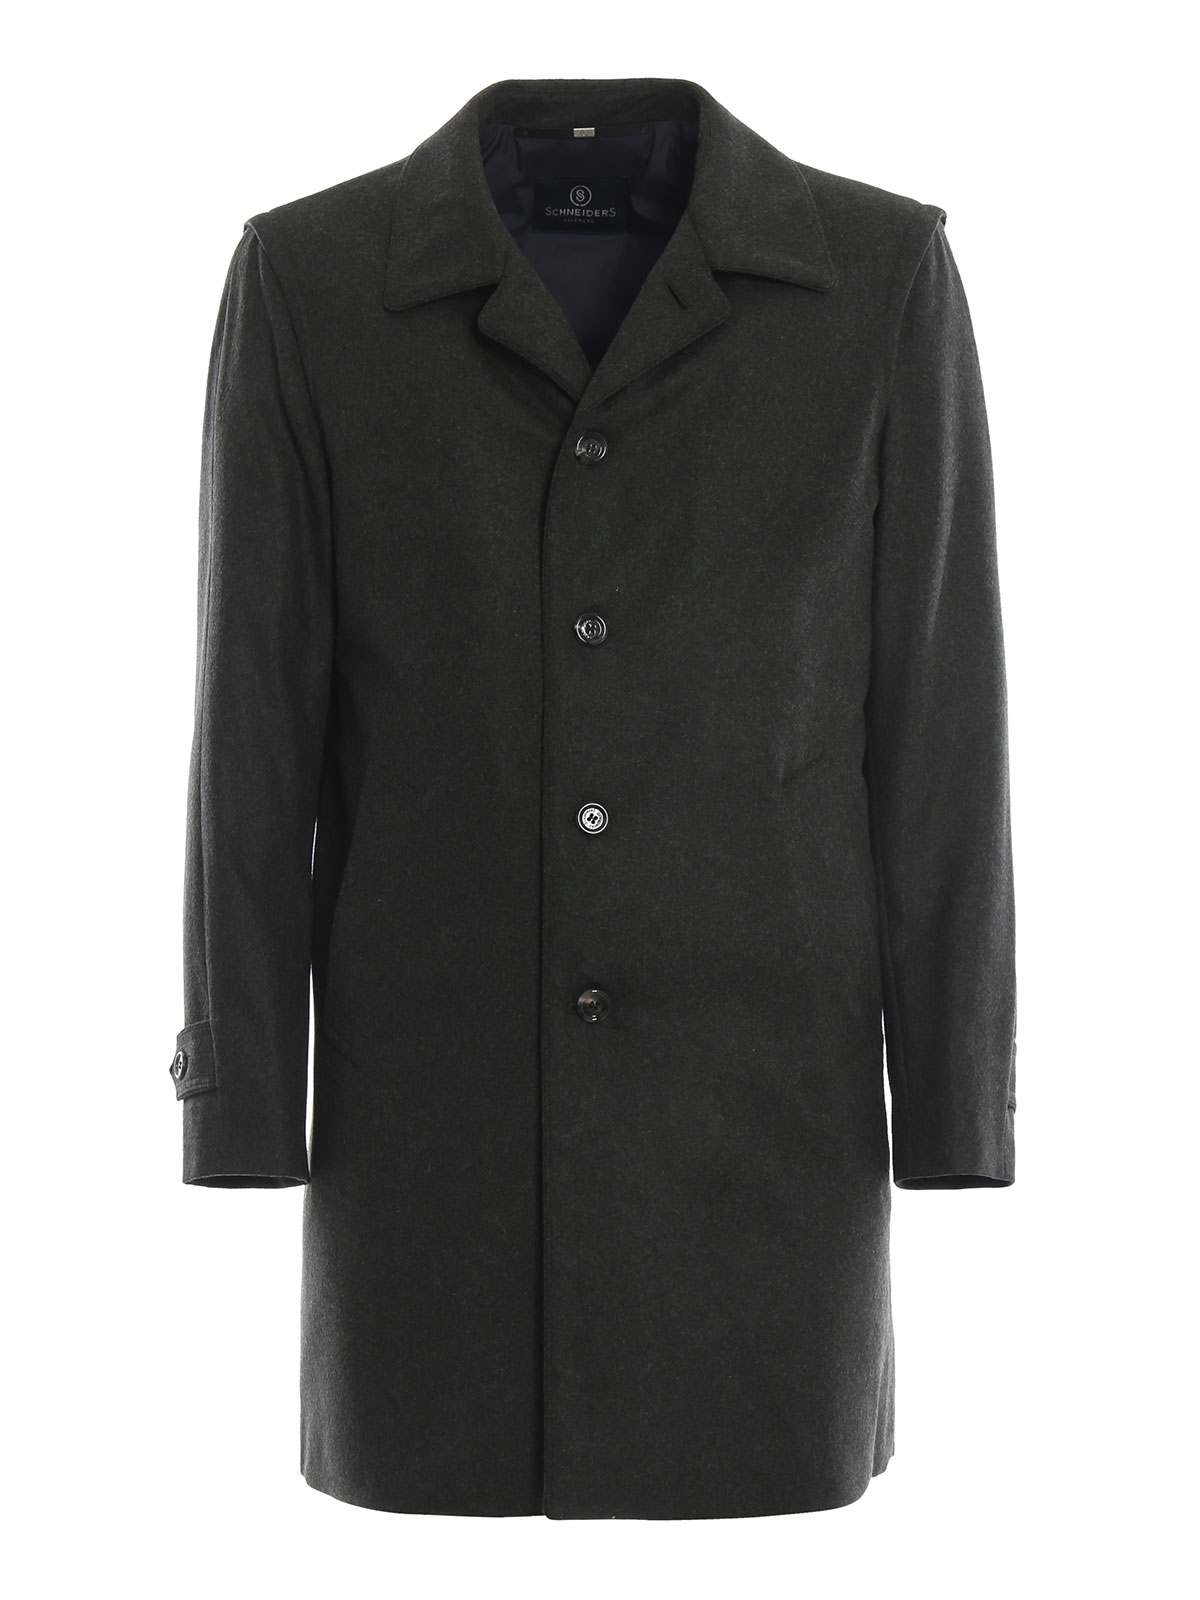 Schneiders - Forest green classic loden wool blend coat - short coats ...